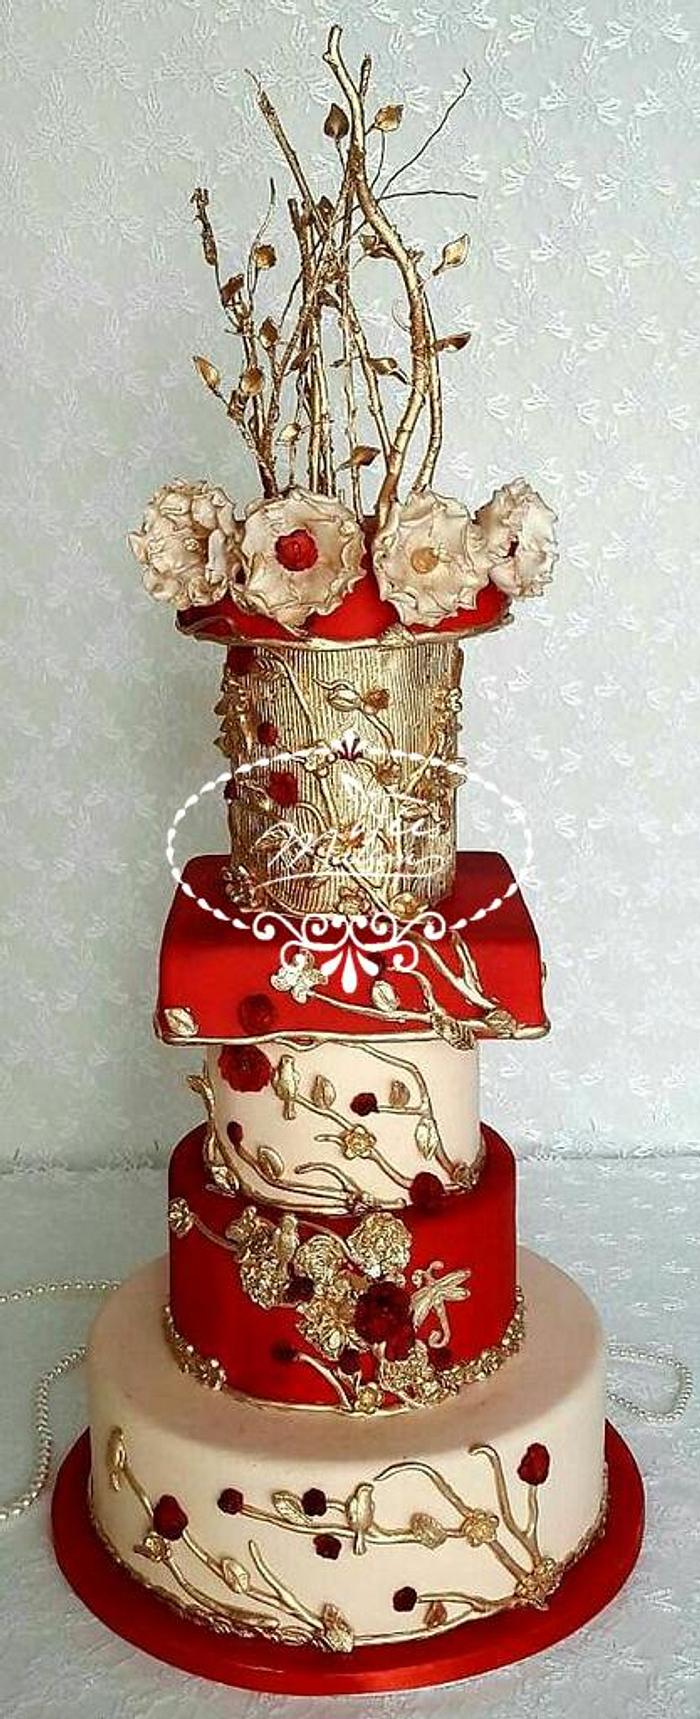 Majestic & Flowery Wedding Cake 1